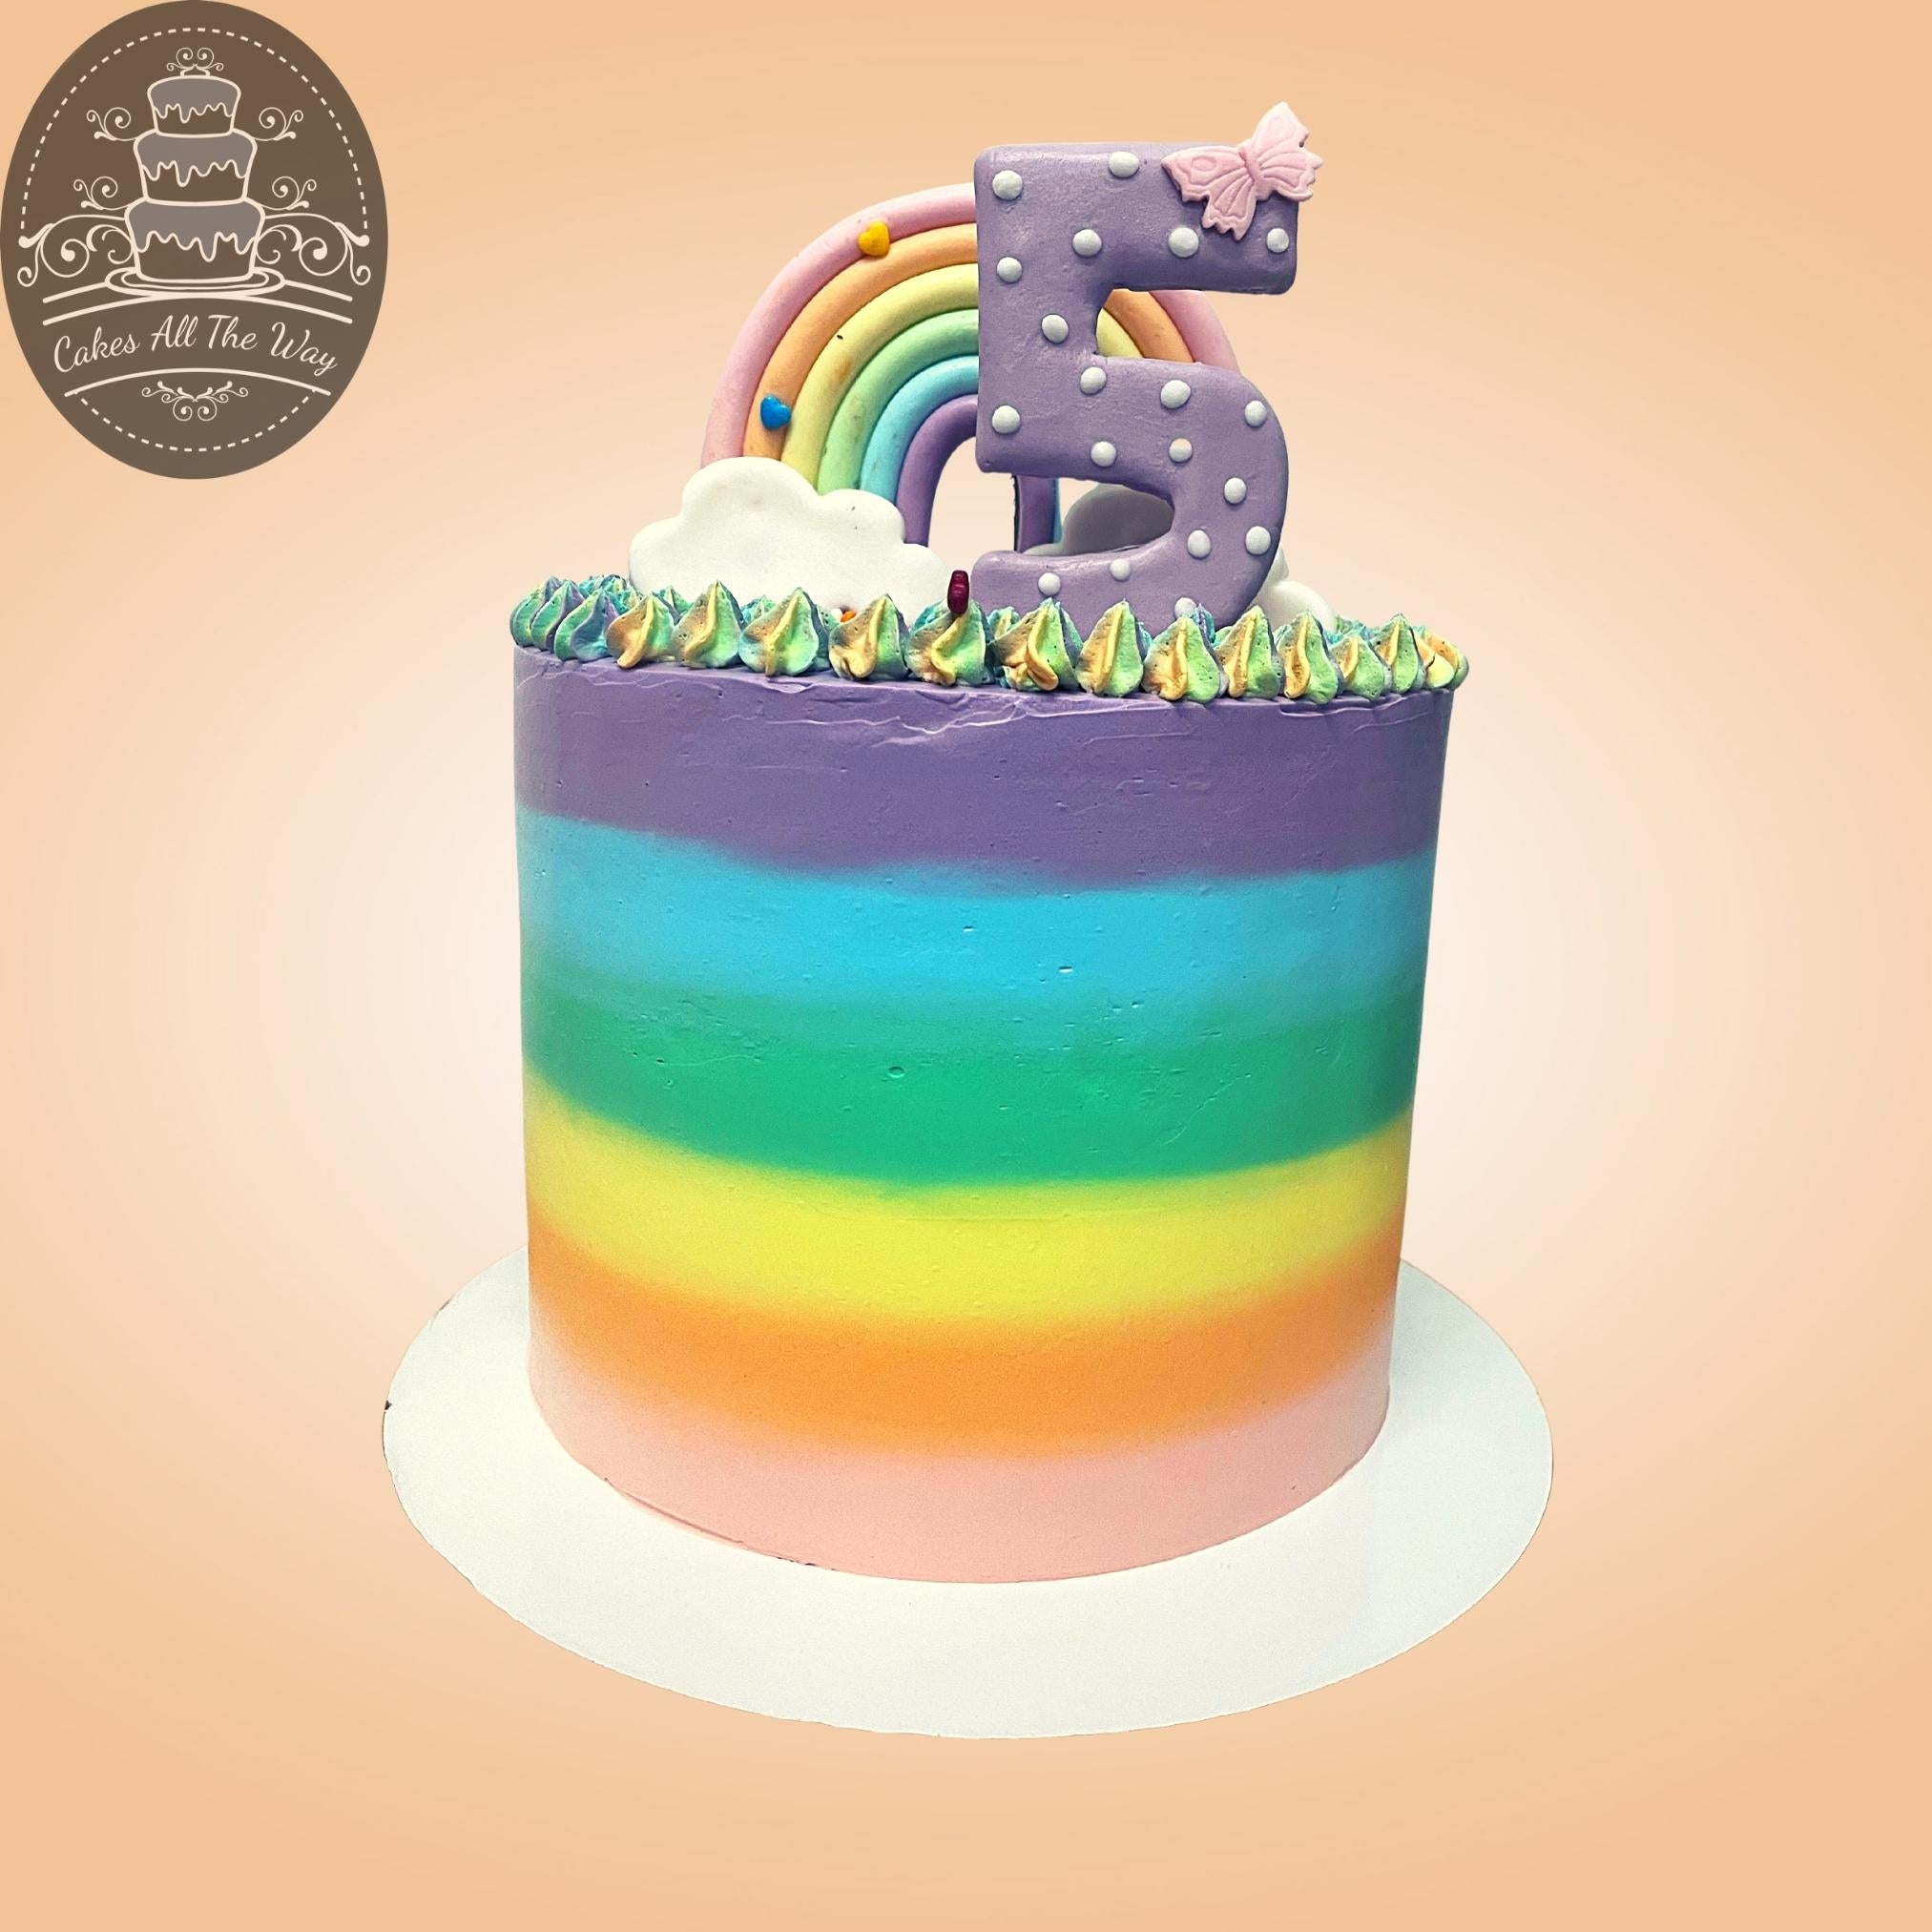 How to Make a Rainbow Cake - CrystalandComp.com